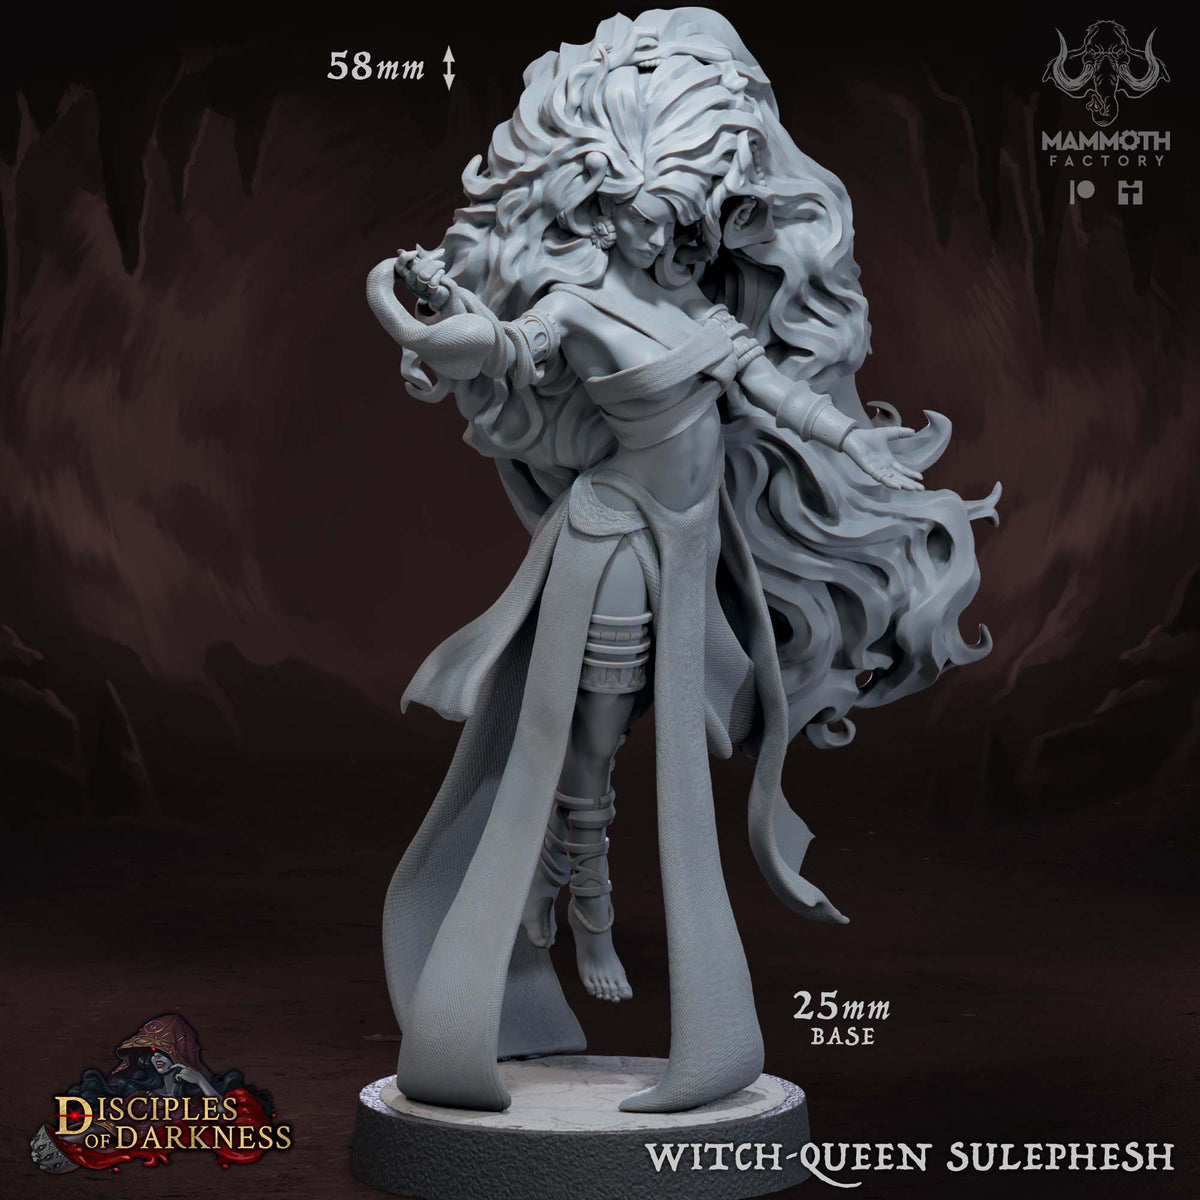 Witch-Queen Sulephesh